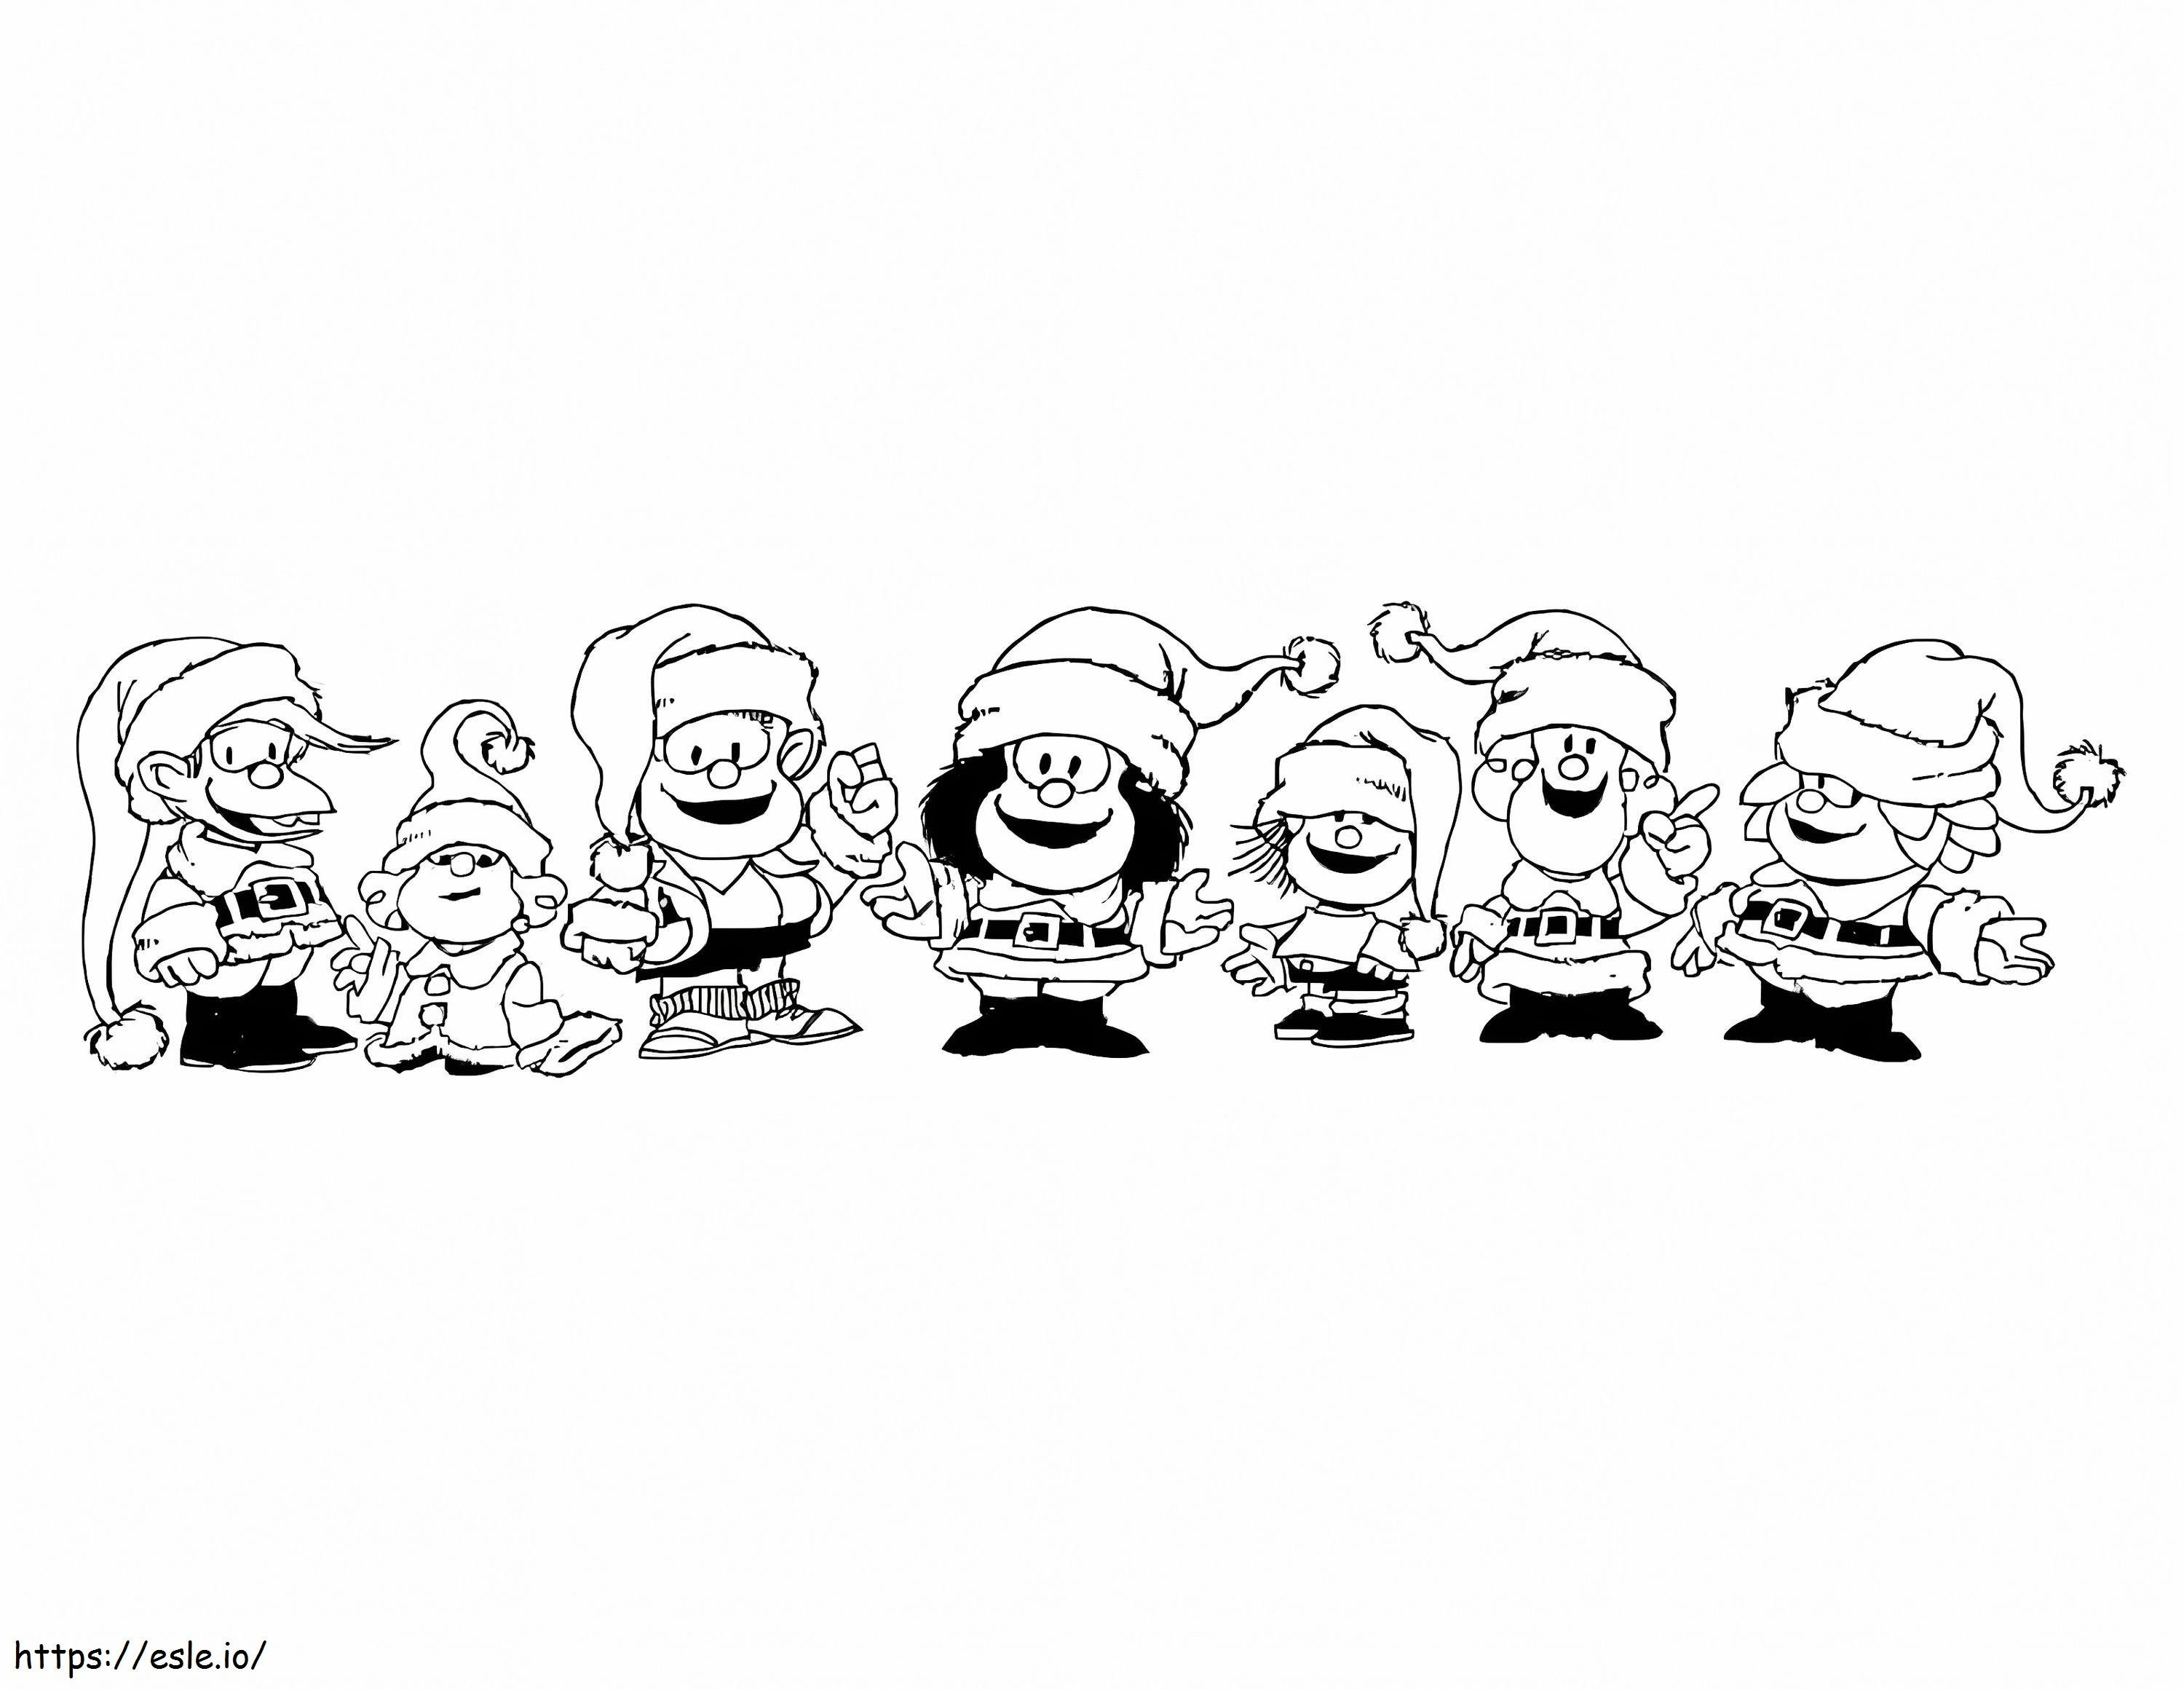 Christmas Mafalda coloring page